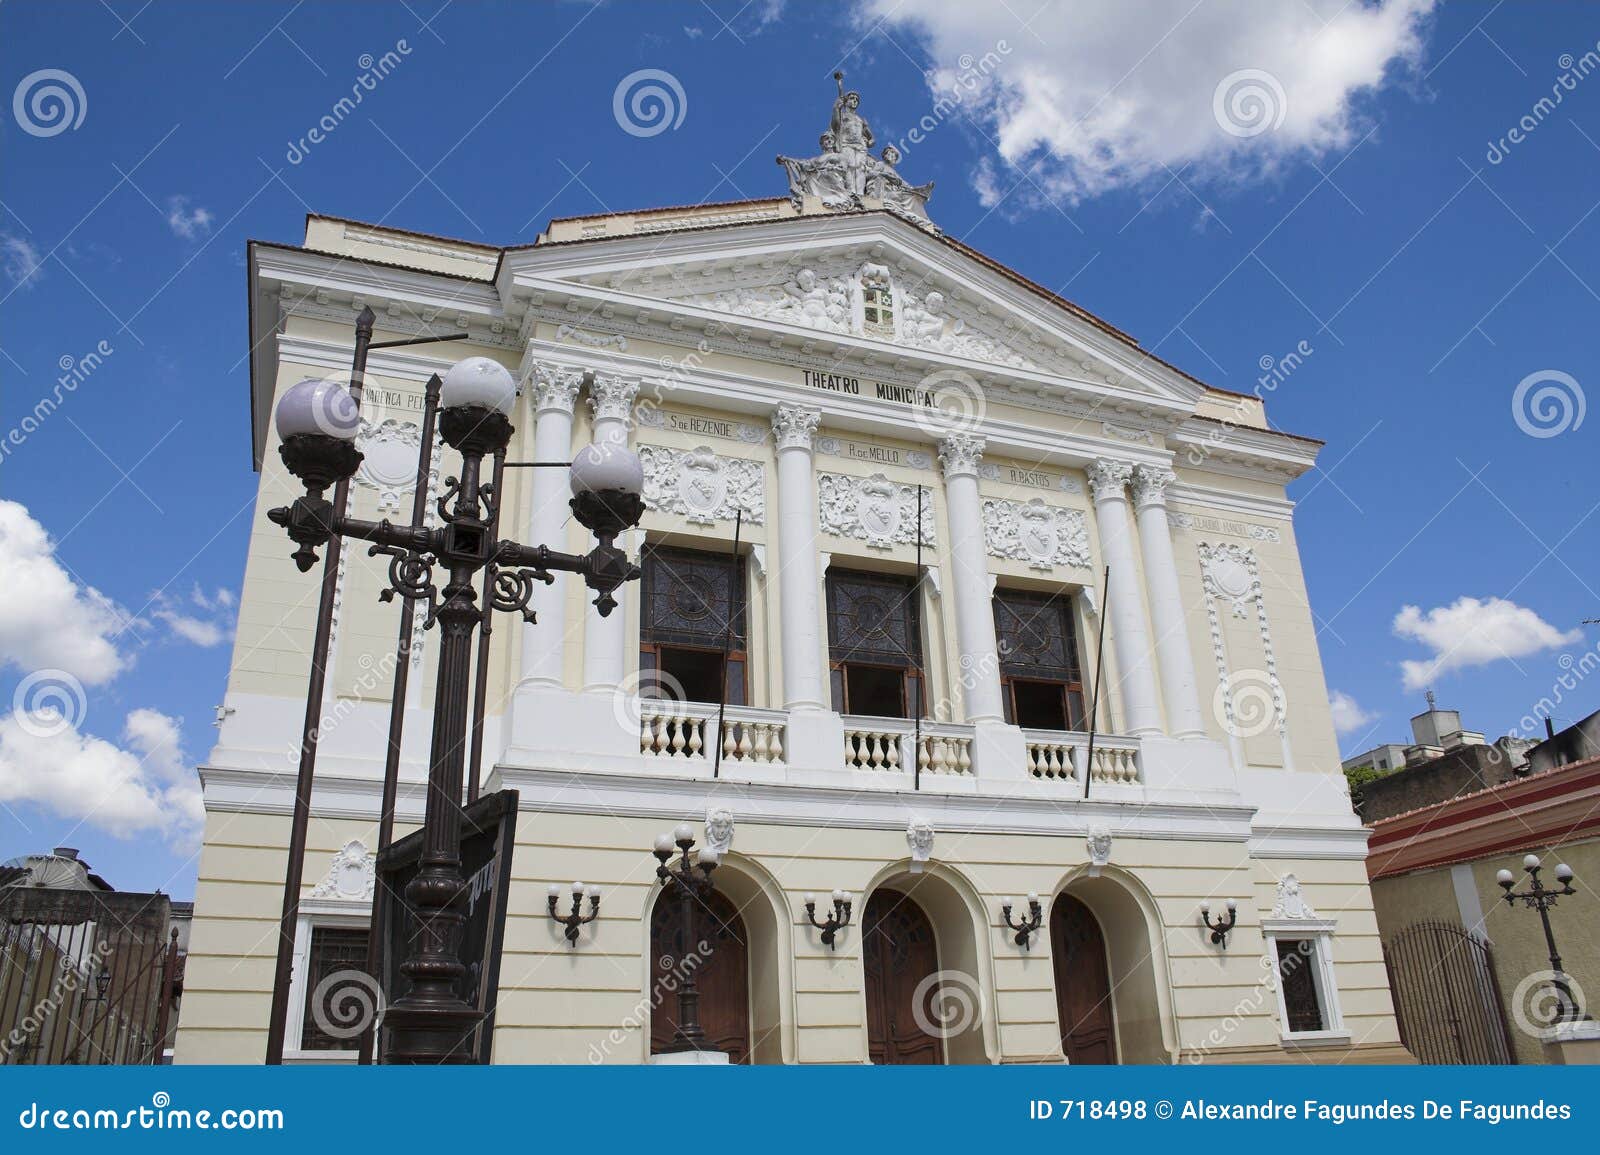 municipal theatre sao joao del rey